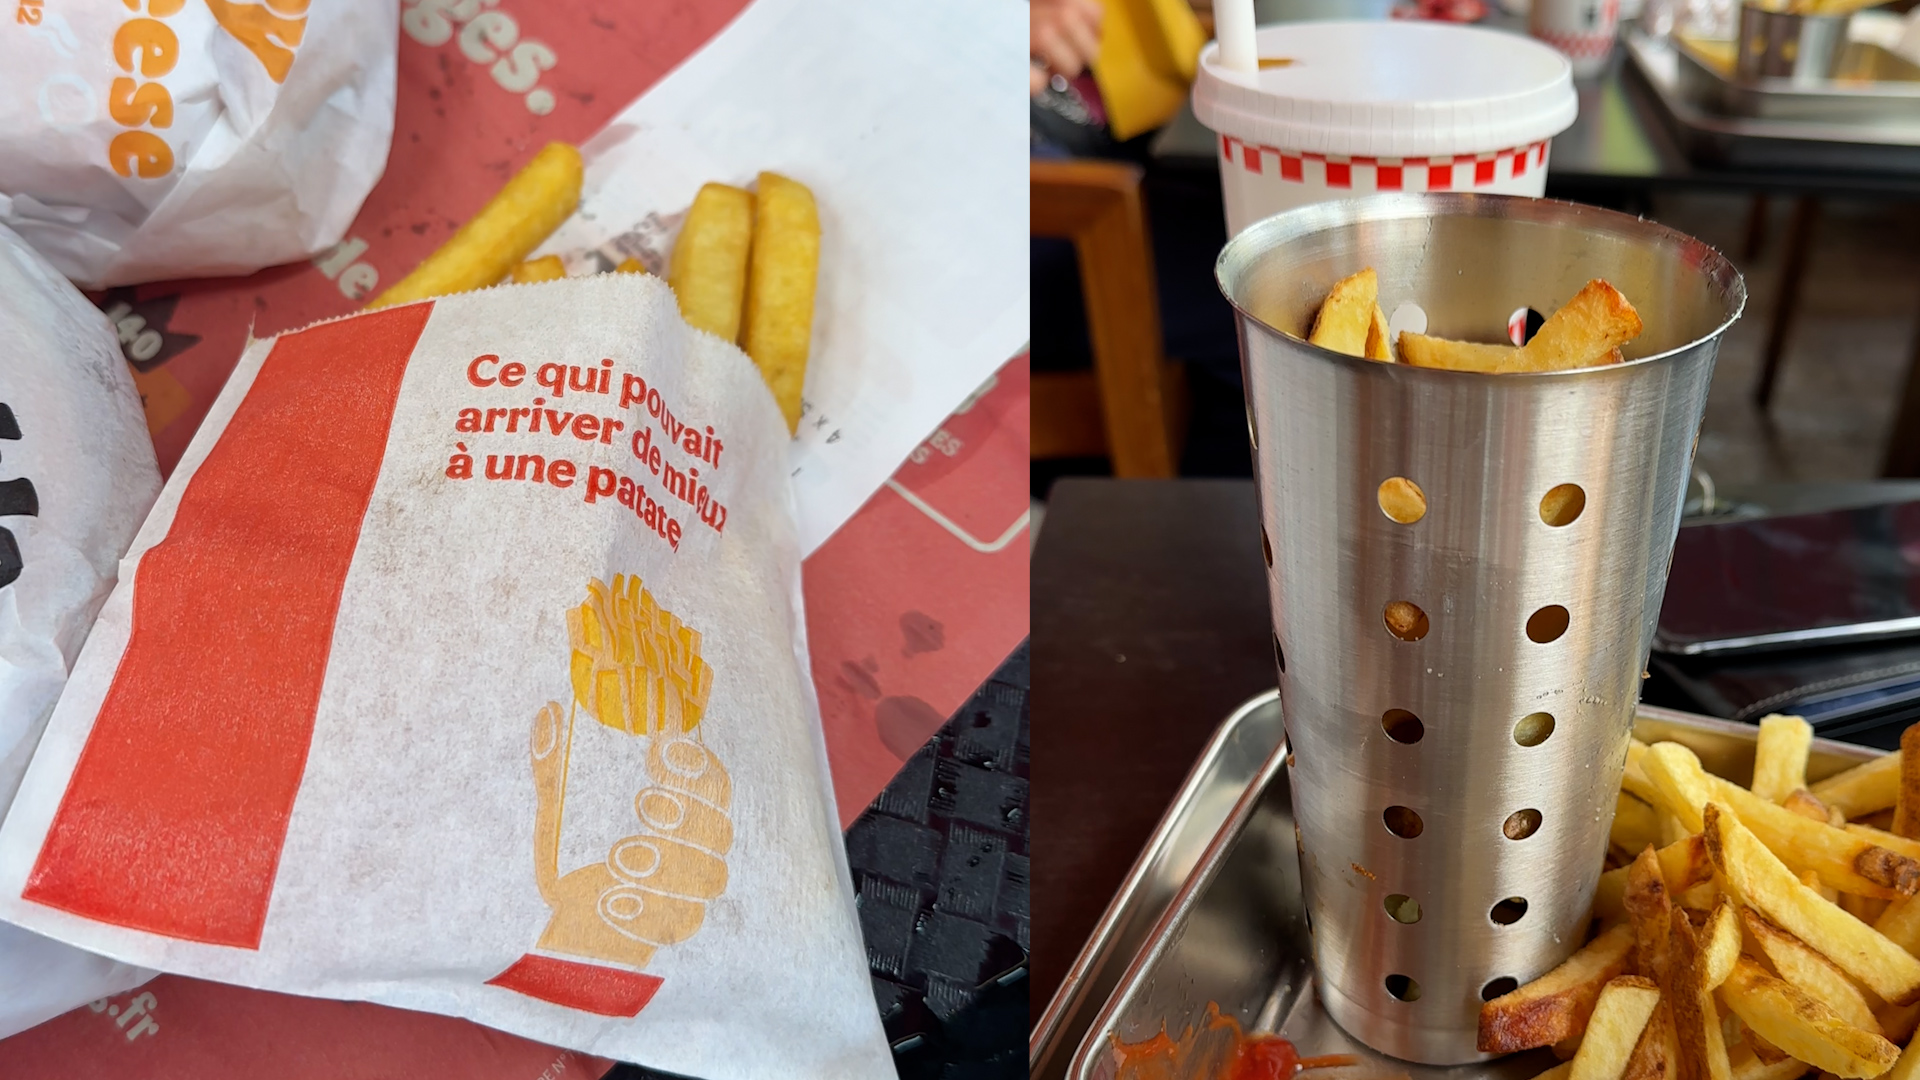 (À gauche), le Mcdonald's des Champs-Élysées continue de servir des frites dans des sachets à jeter. (À droite), le Five Guys situé dans la même avenue, propose de la vaisselle réutilisable, sauf pour ses boissons.